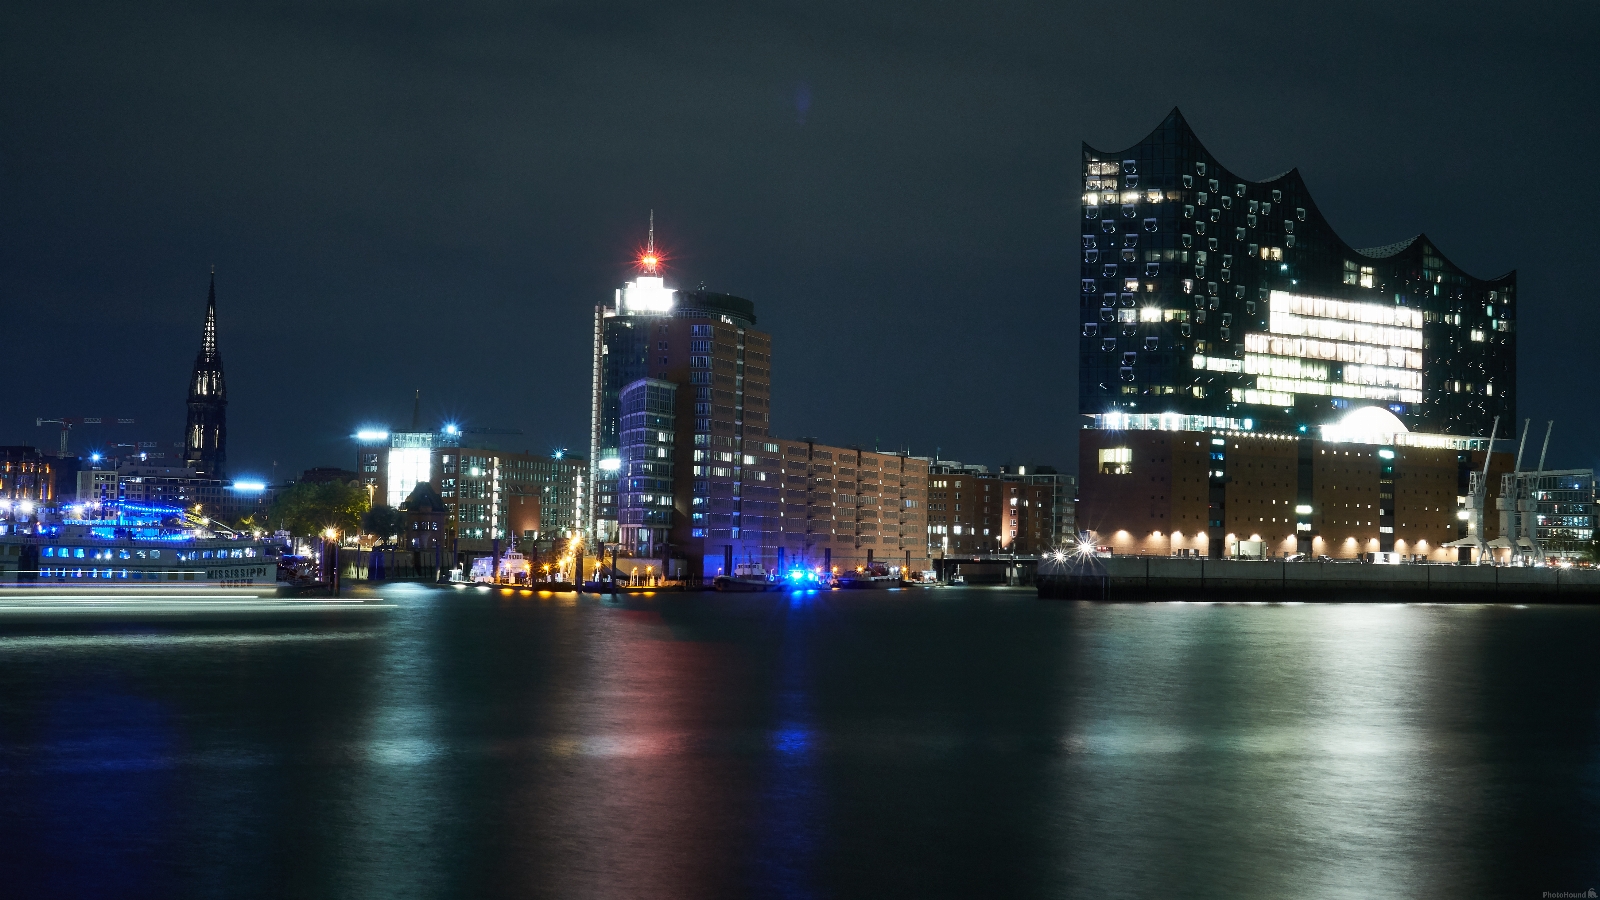 Image of Hamburg Skyline by Robert Bro